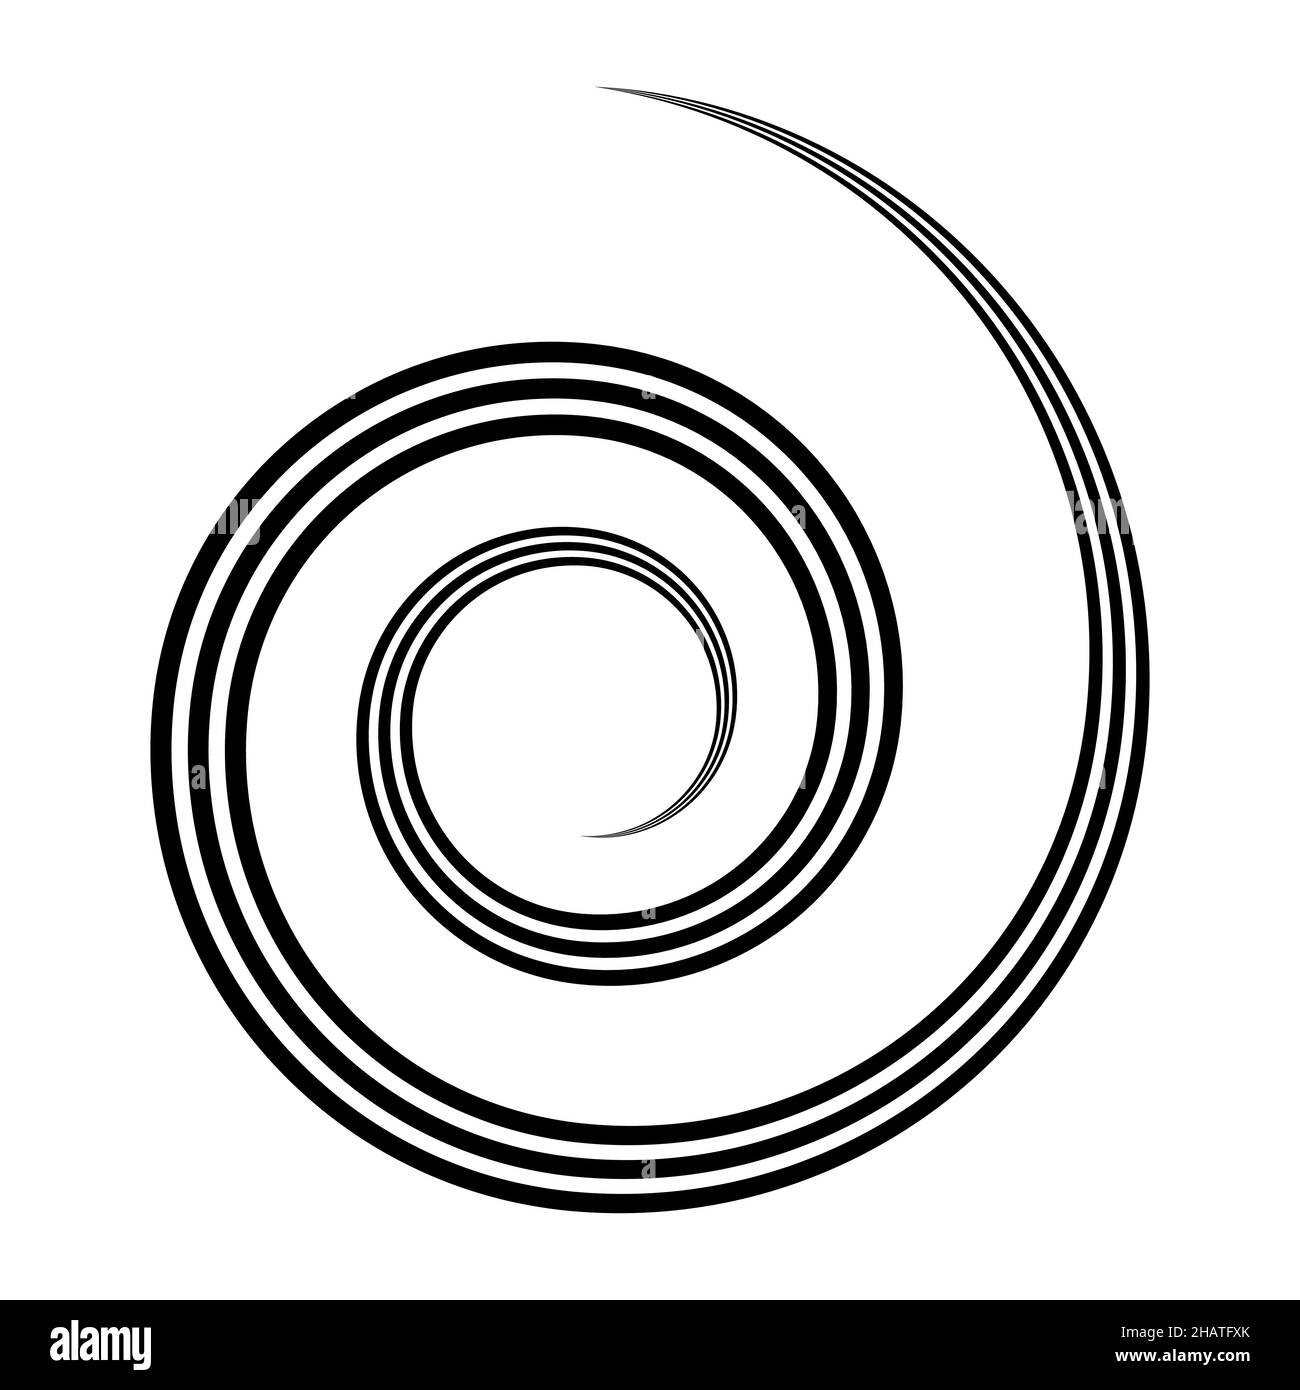 Dreifache Spirale, Wirbel, rotierende runde und konzentrische Form gewellt Stock Illustration Stock Vektor